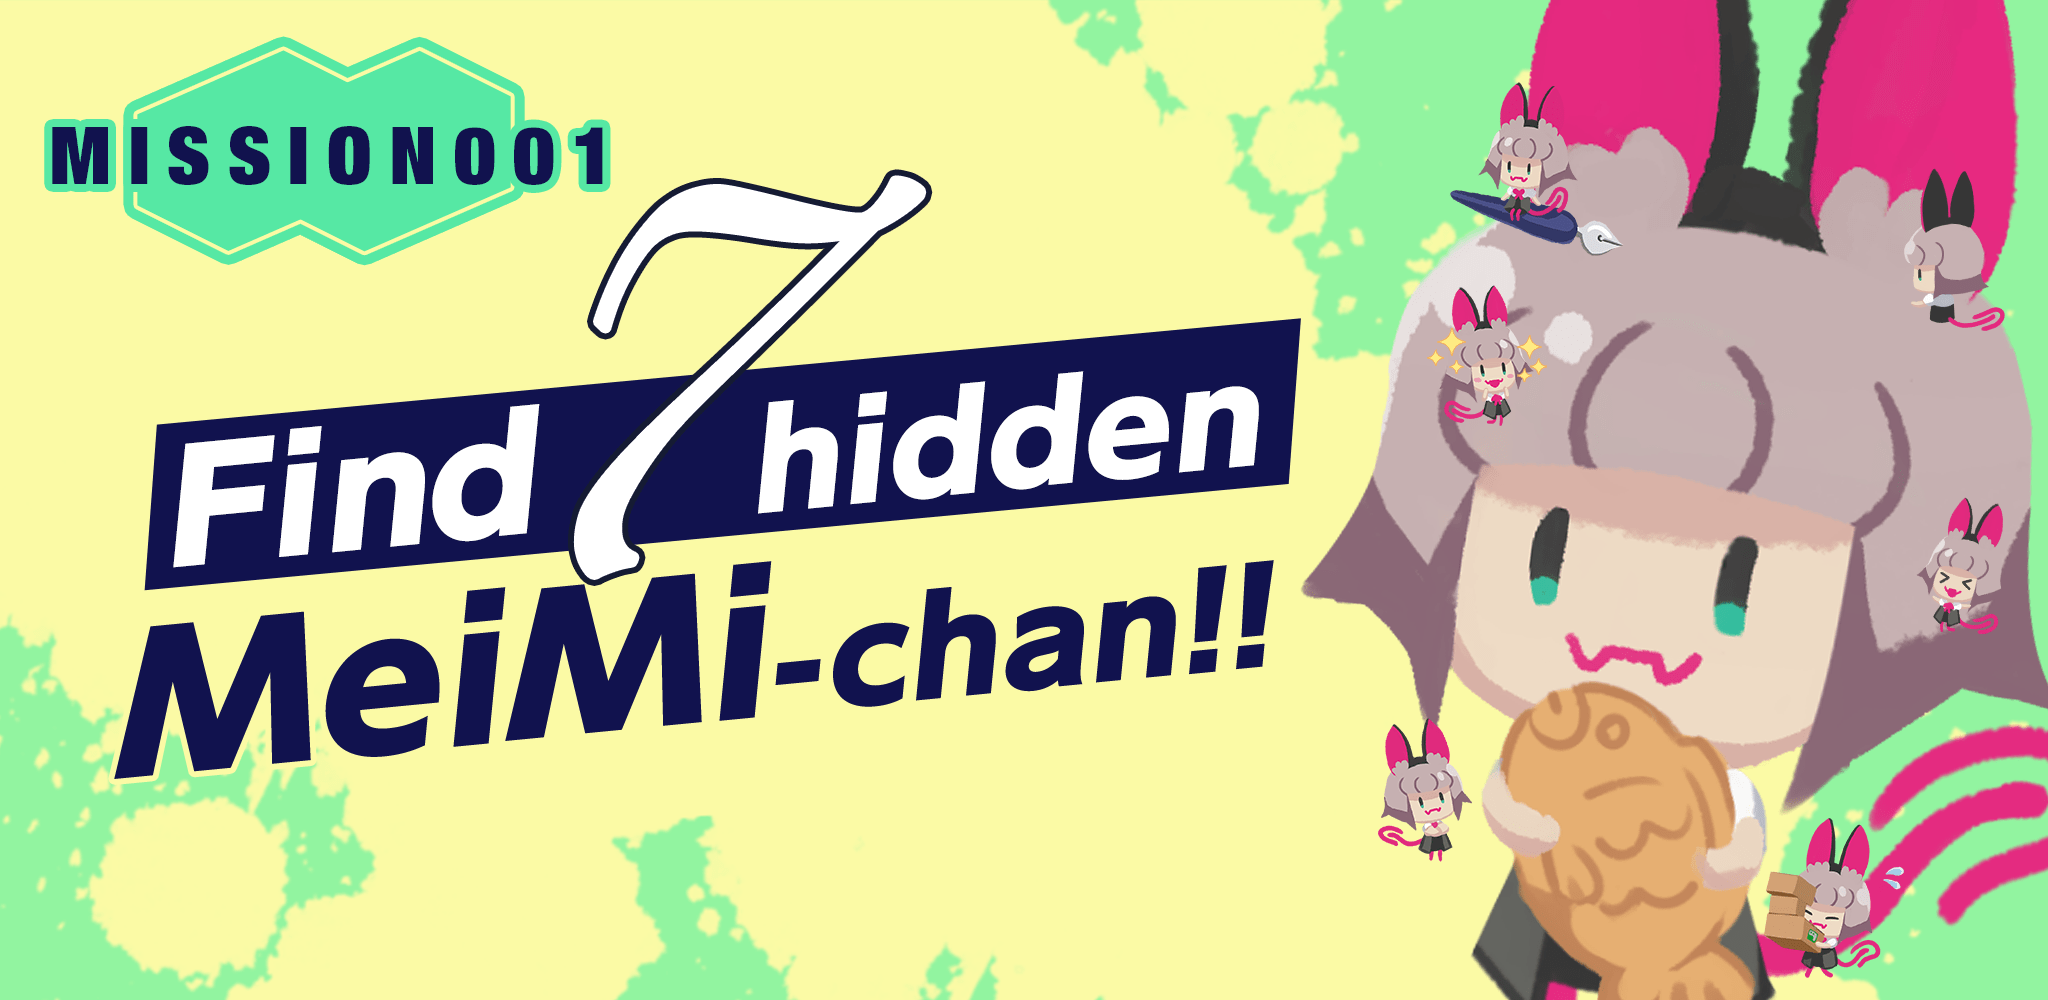 MISSION001 Find 7 hidden MeiMi-chan!!